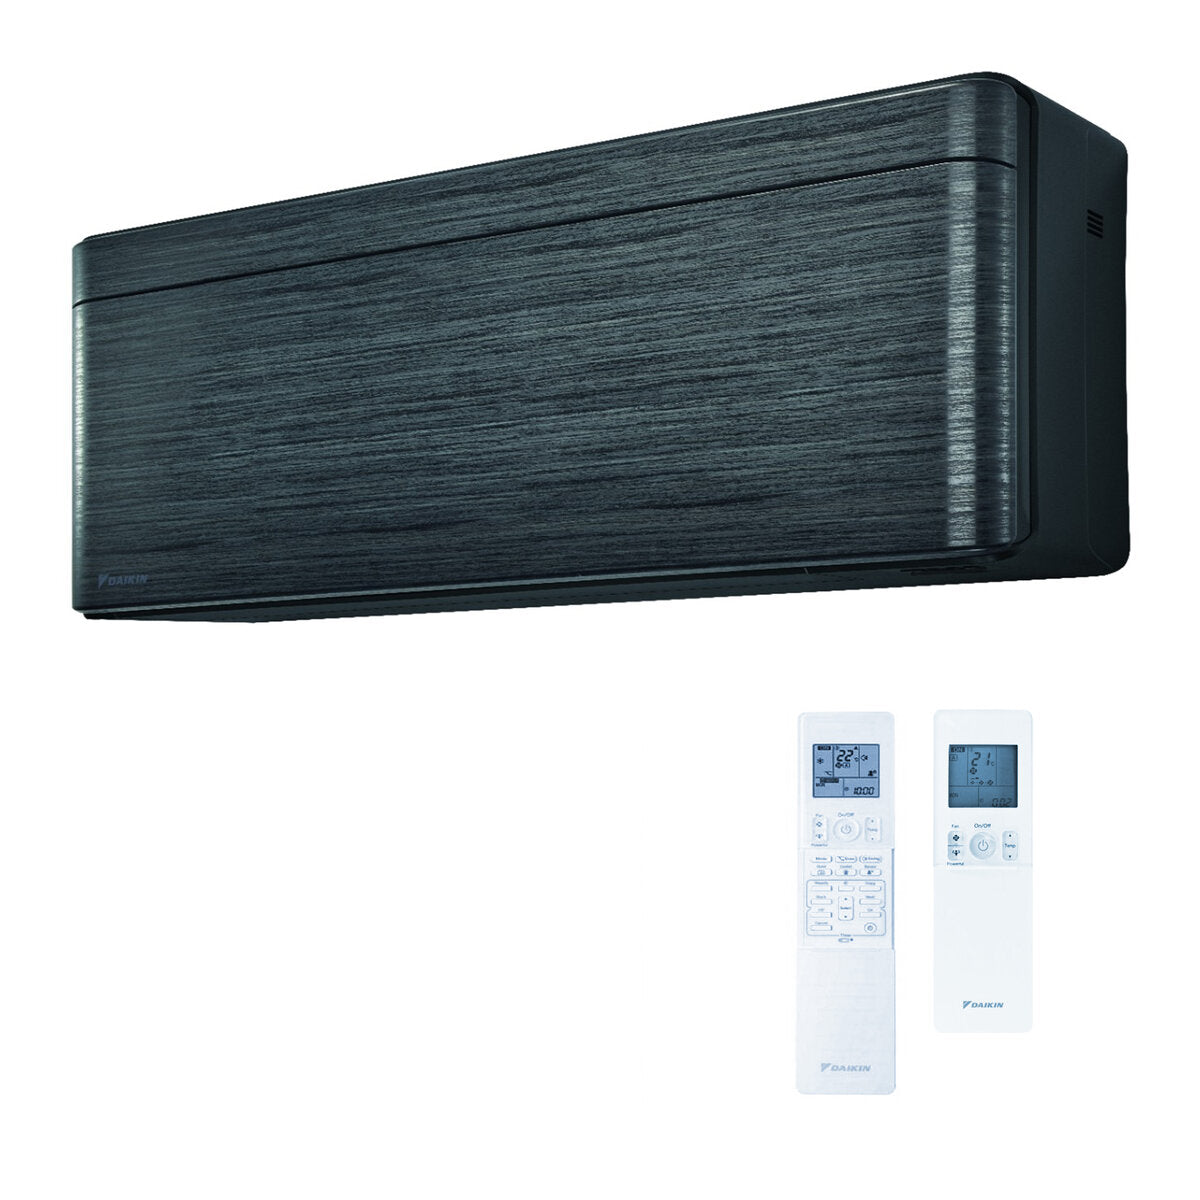 Daikin Stylish air conditioner penta split 7000 + 9000 + 9000 + 12000 + 12000 BTU inverter A ++ wifi outdoor unit 9.0 kW